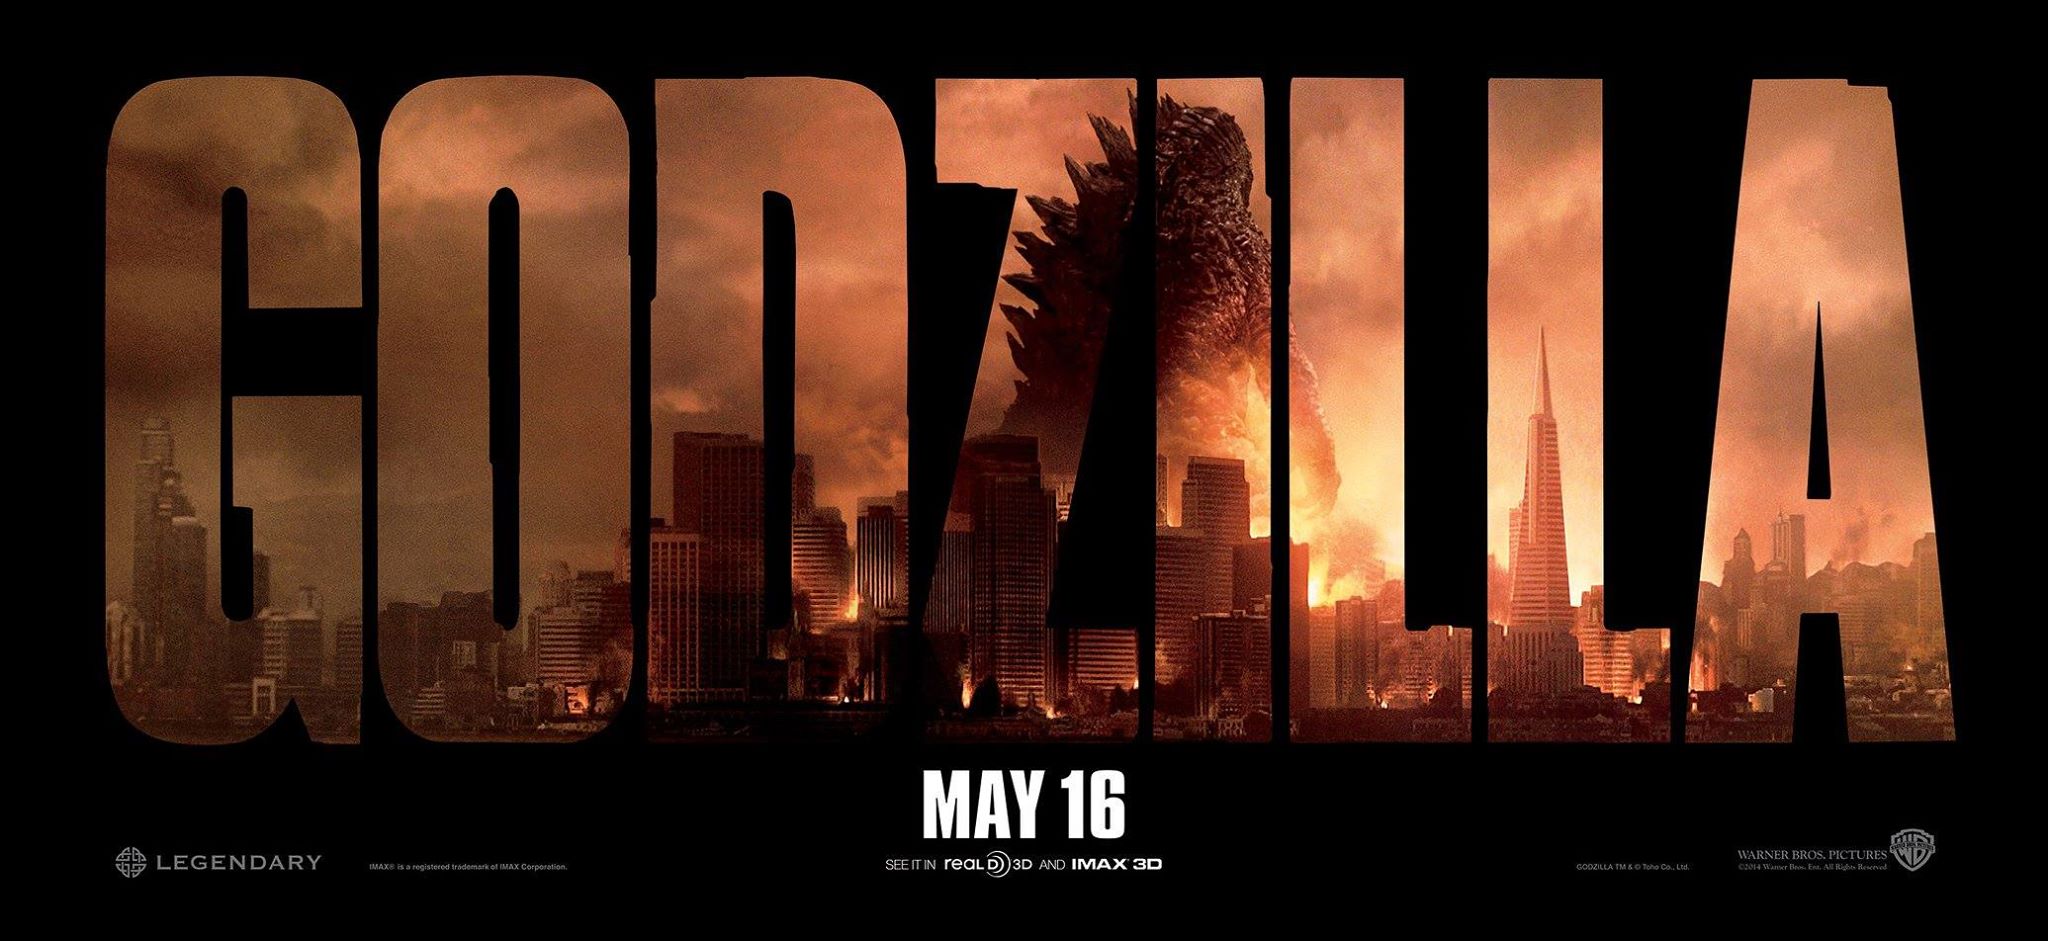 Μήπως το παρακάναμε με το μέγεθος του Godzilla;